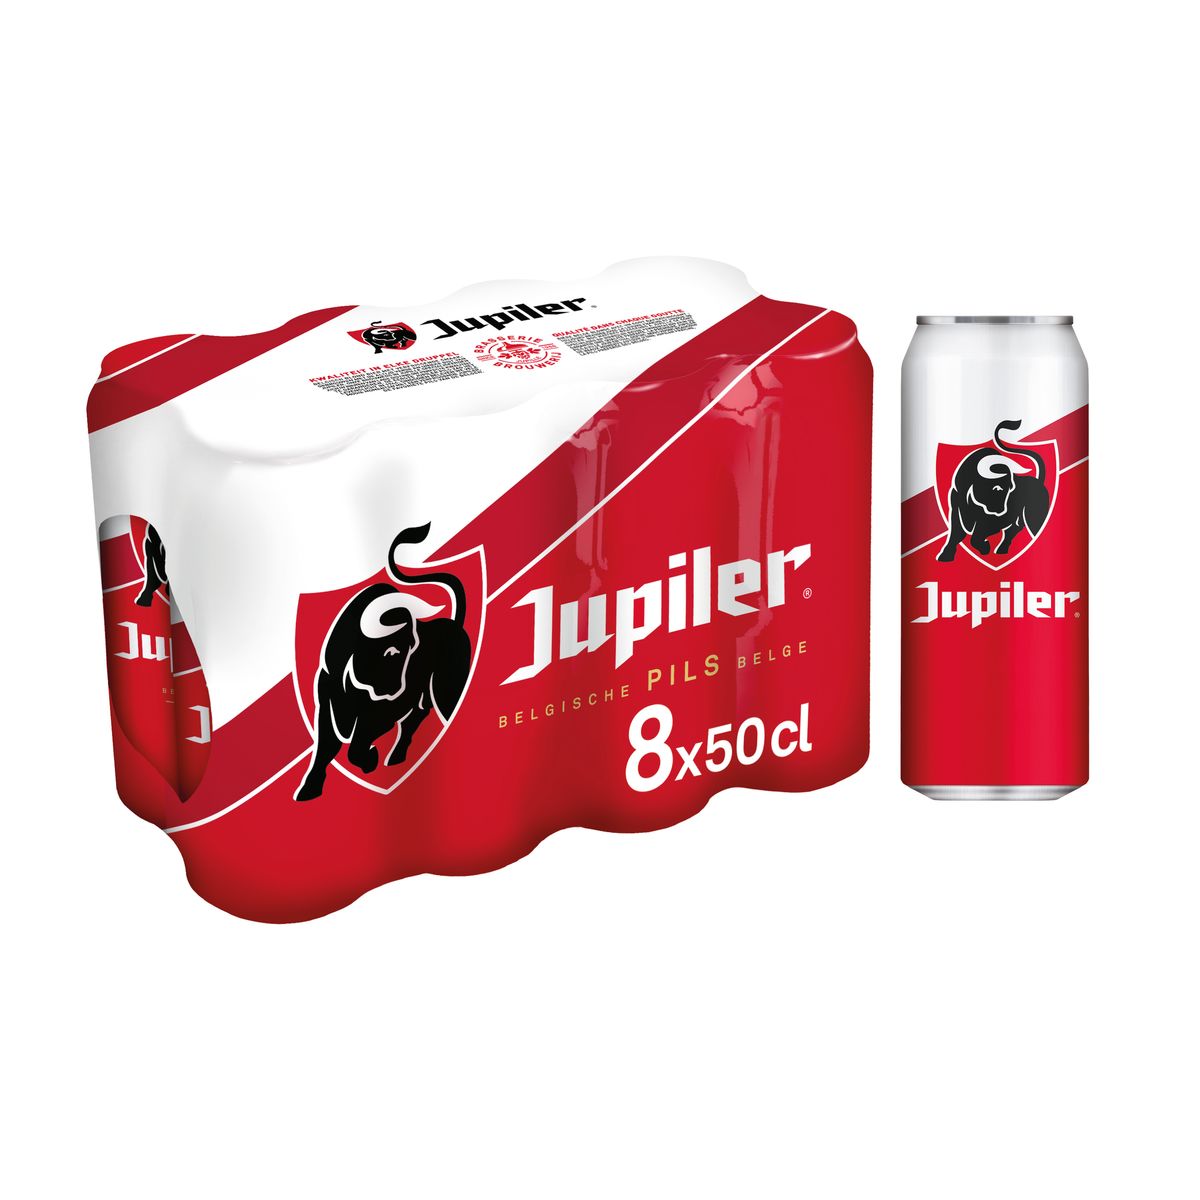 Jupiler Blond Bier Pils 5.2% Alc 8 x 50 cl Blikken